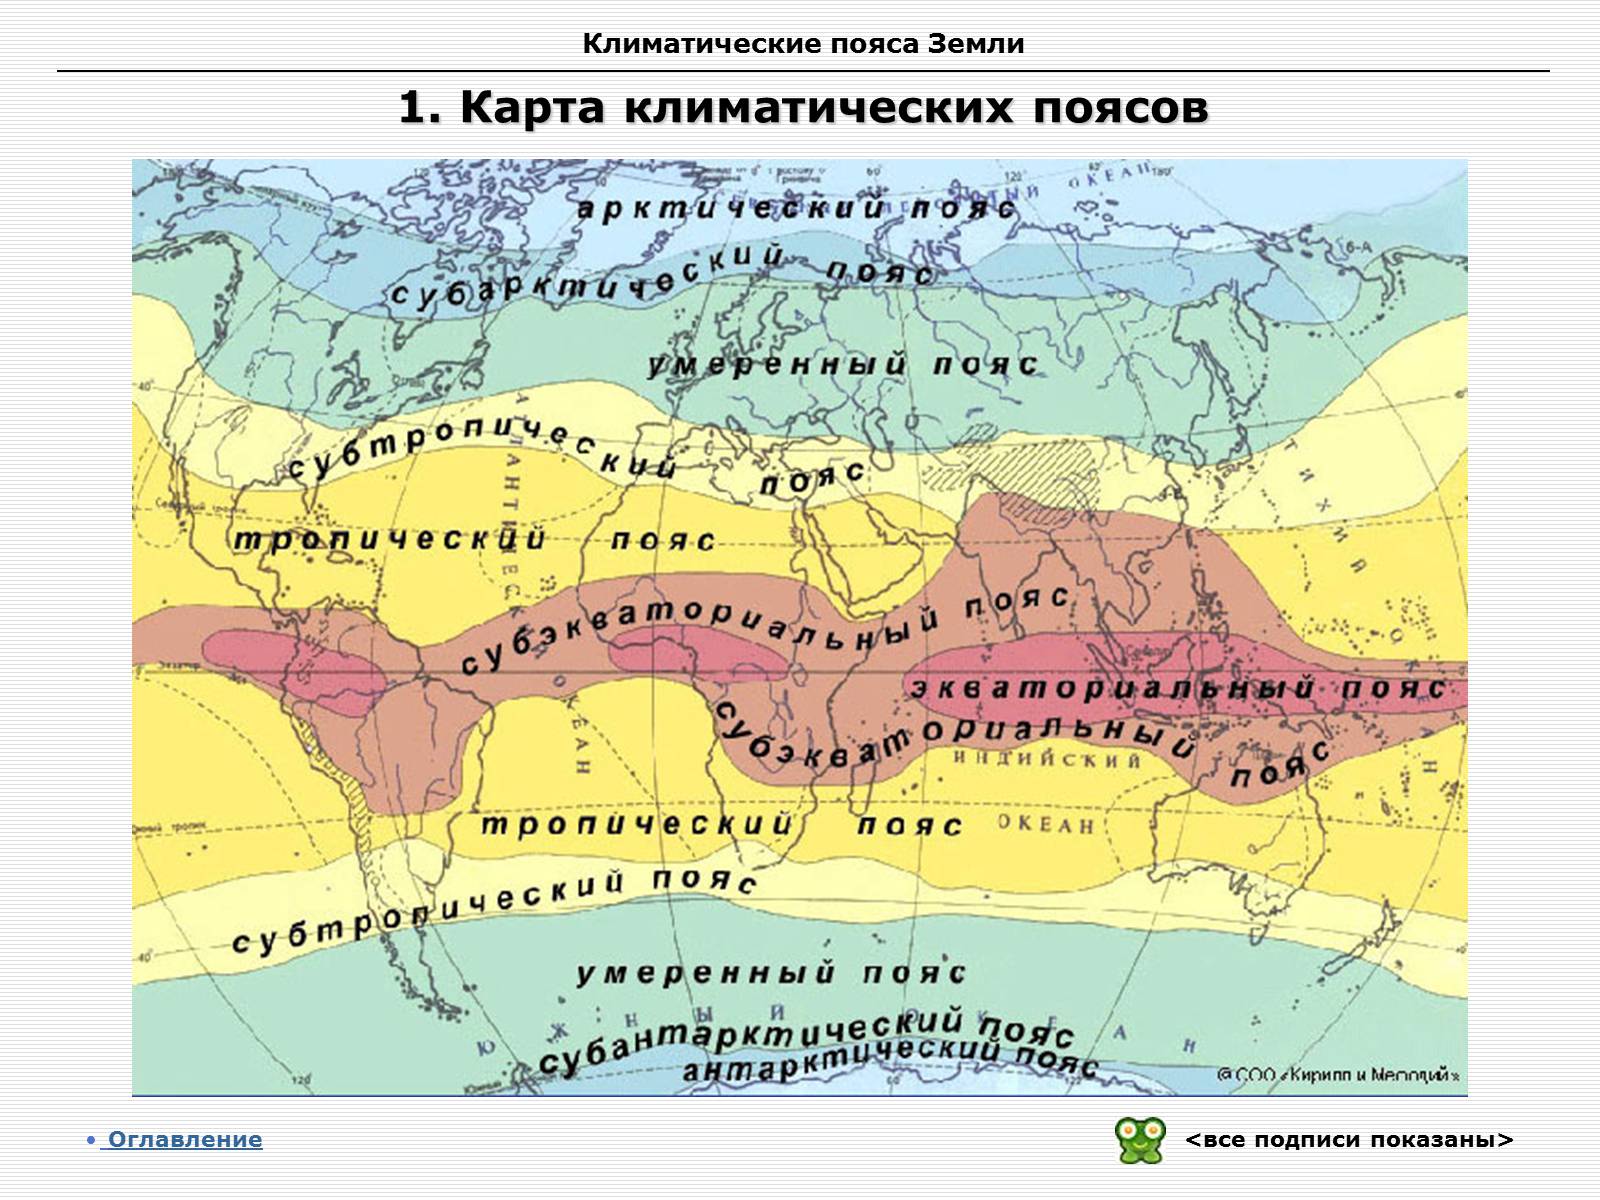 Умеренно холодный пояс. Субтропический климатический пояс на карте России. Карта климатических поясов Евразии. Климат Евразии карта климатические пояса.